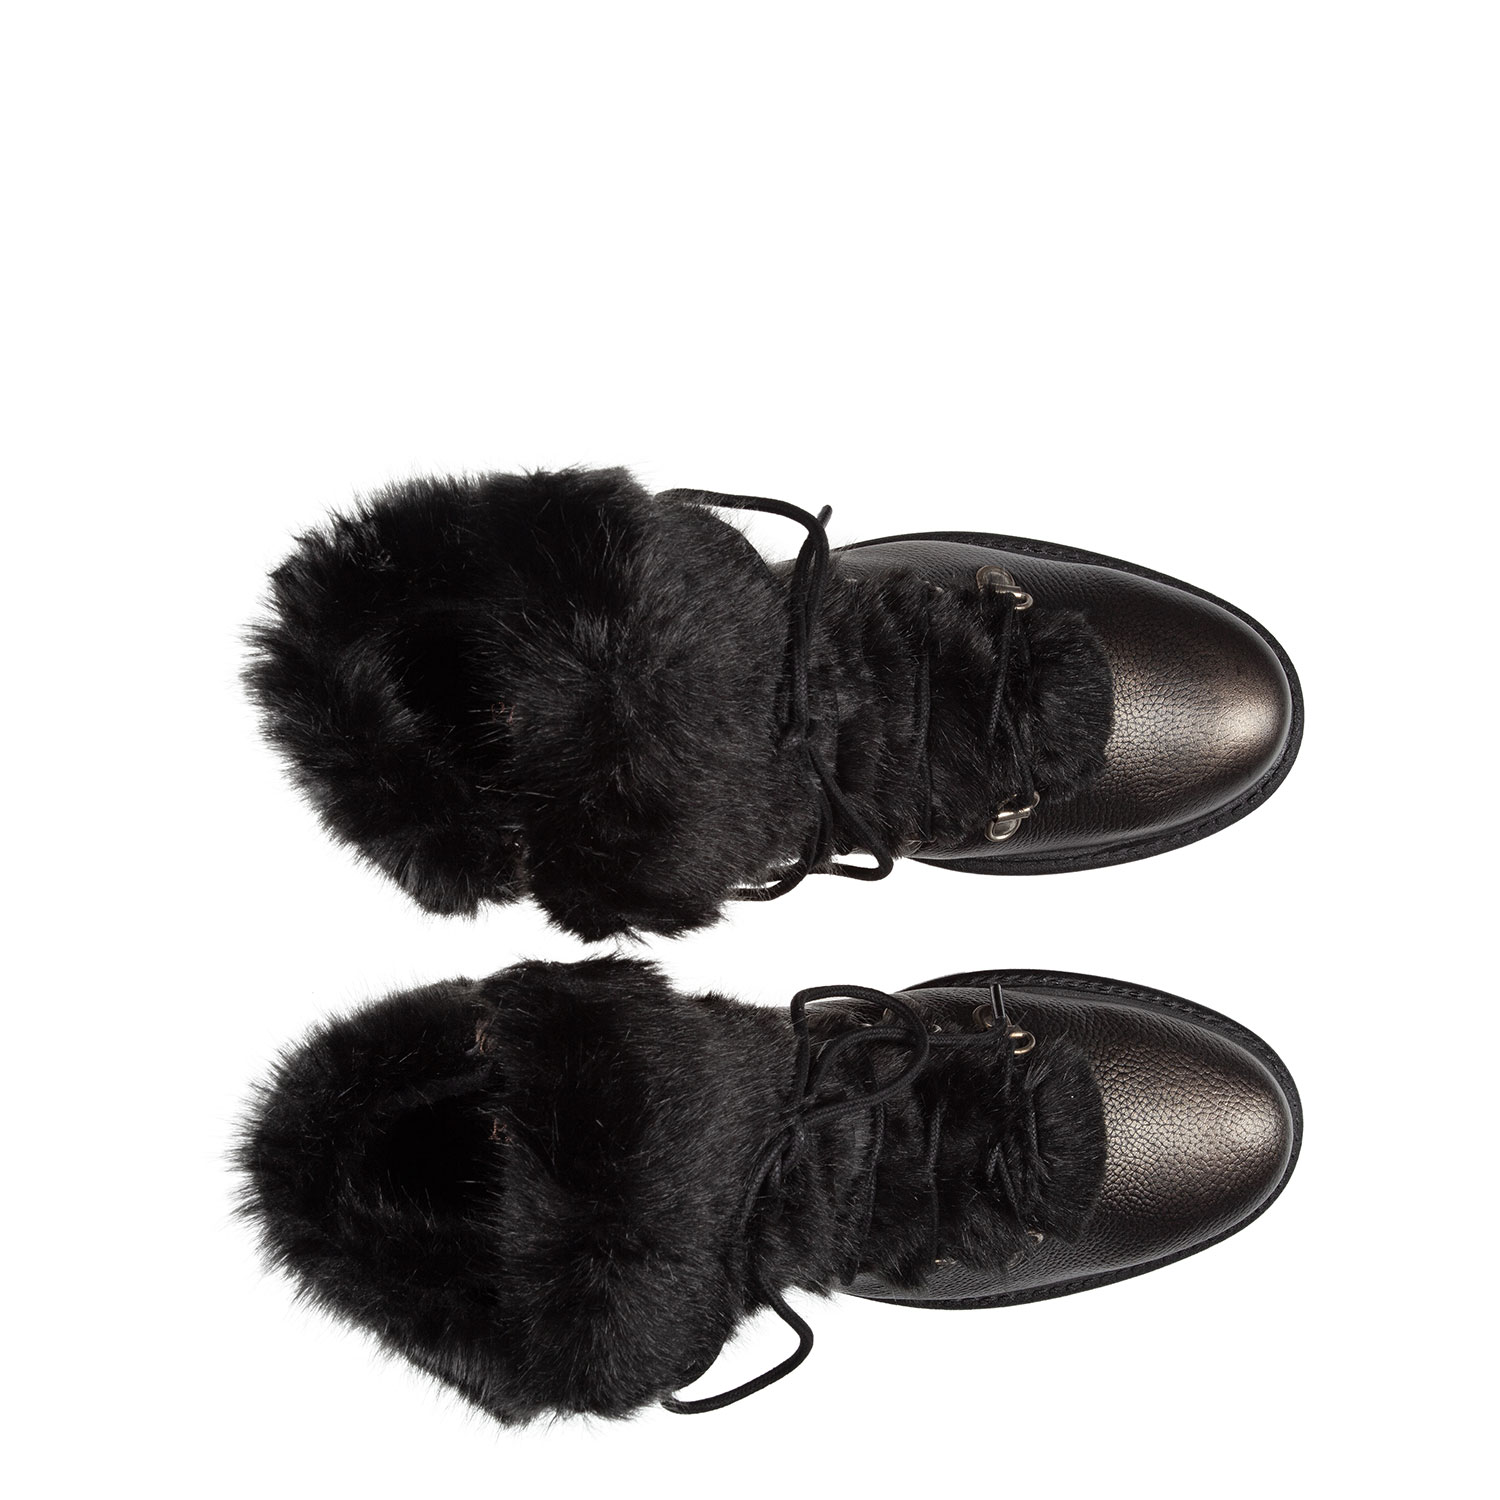 Зимние ботинки из натуральной кожи и экомеха PAZOLINI IA-X5650-9